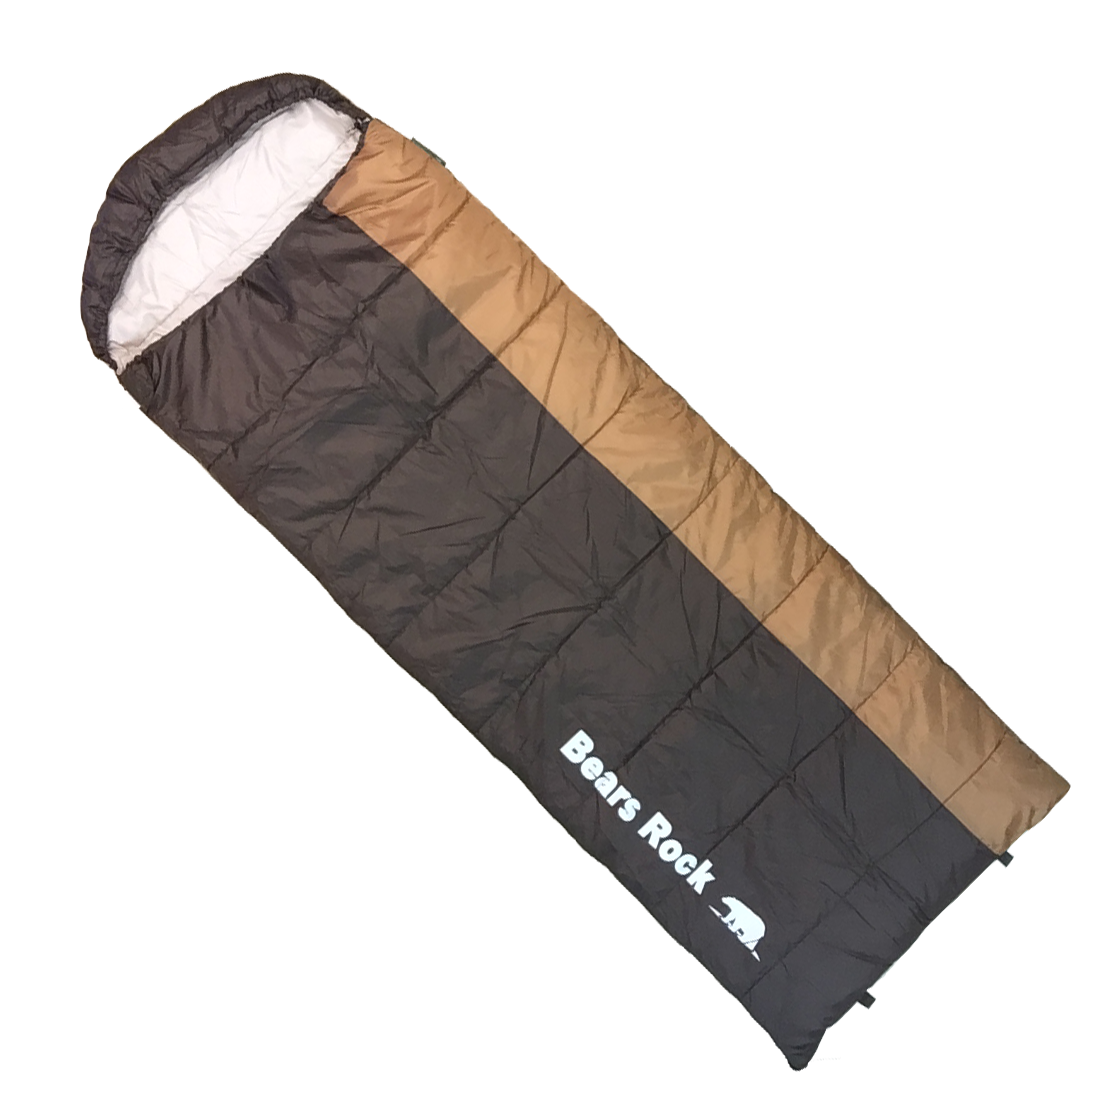 封筒型寝袋-6℃ MX-604 - Bears Rock:寝袋・テントなどアウトドア用品の専門メーカー|ベアーズロック